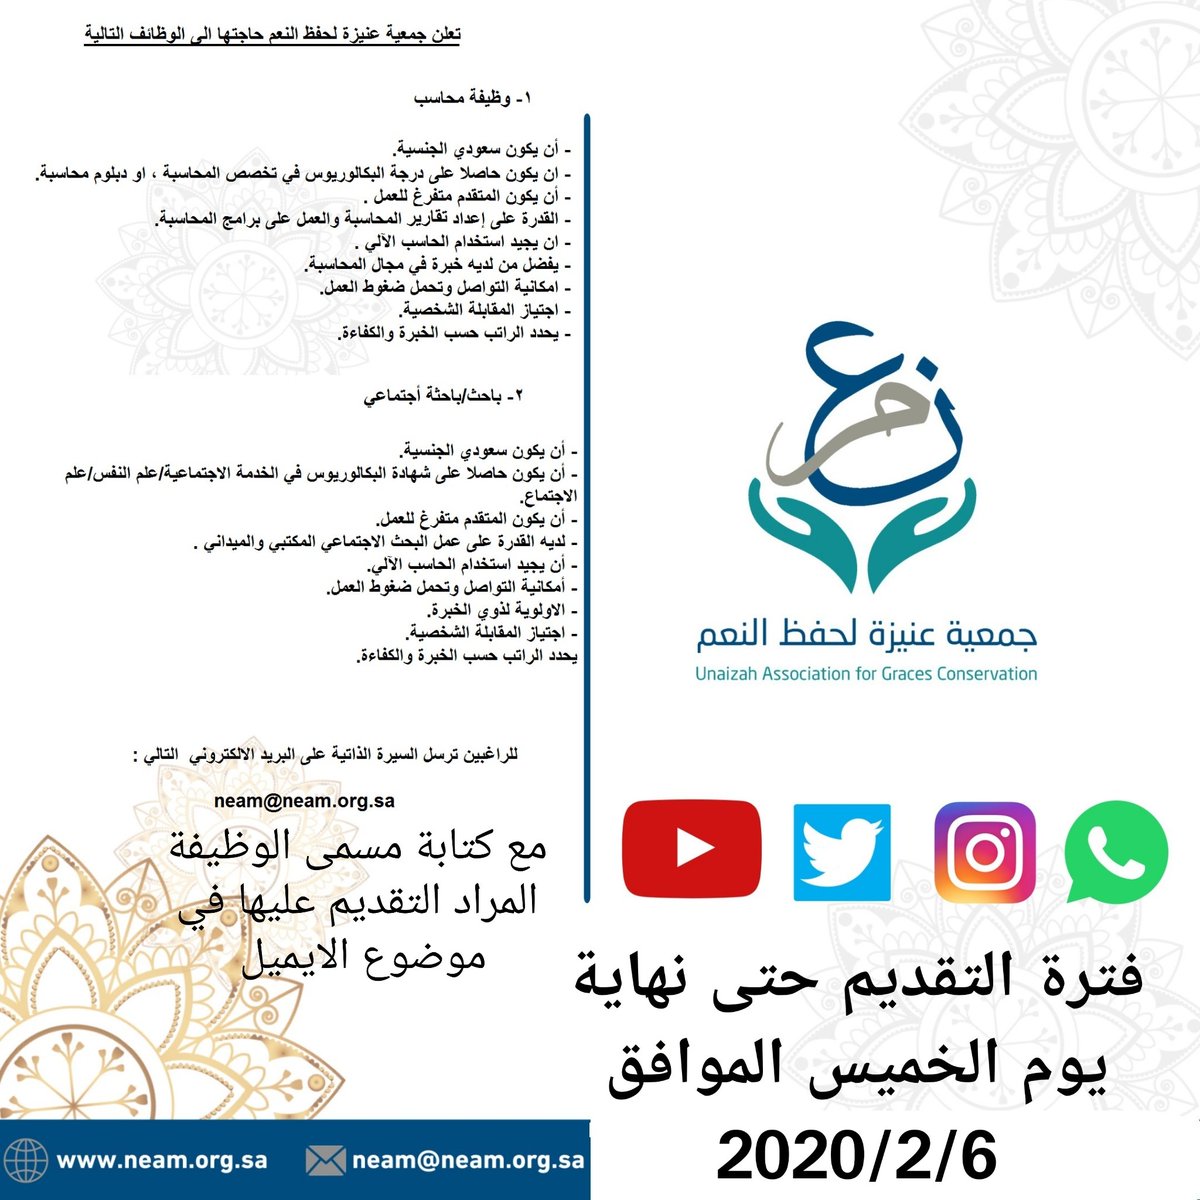 جمعية عنيزة وظائف محاسب / باحث إجتماعي للرجال والنساء